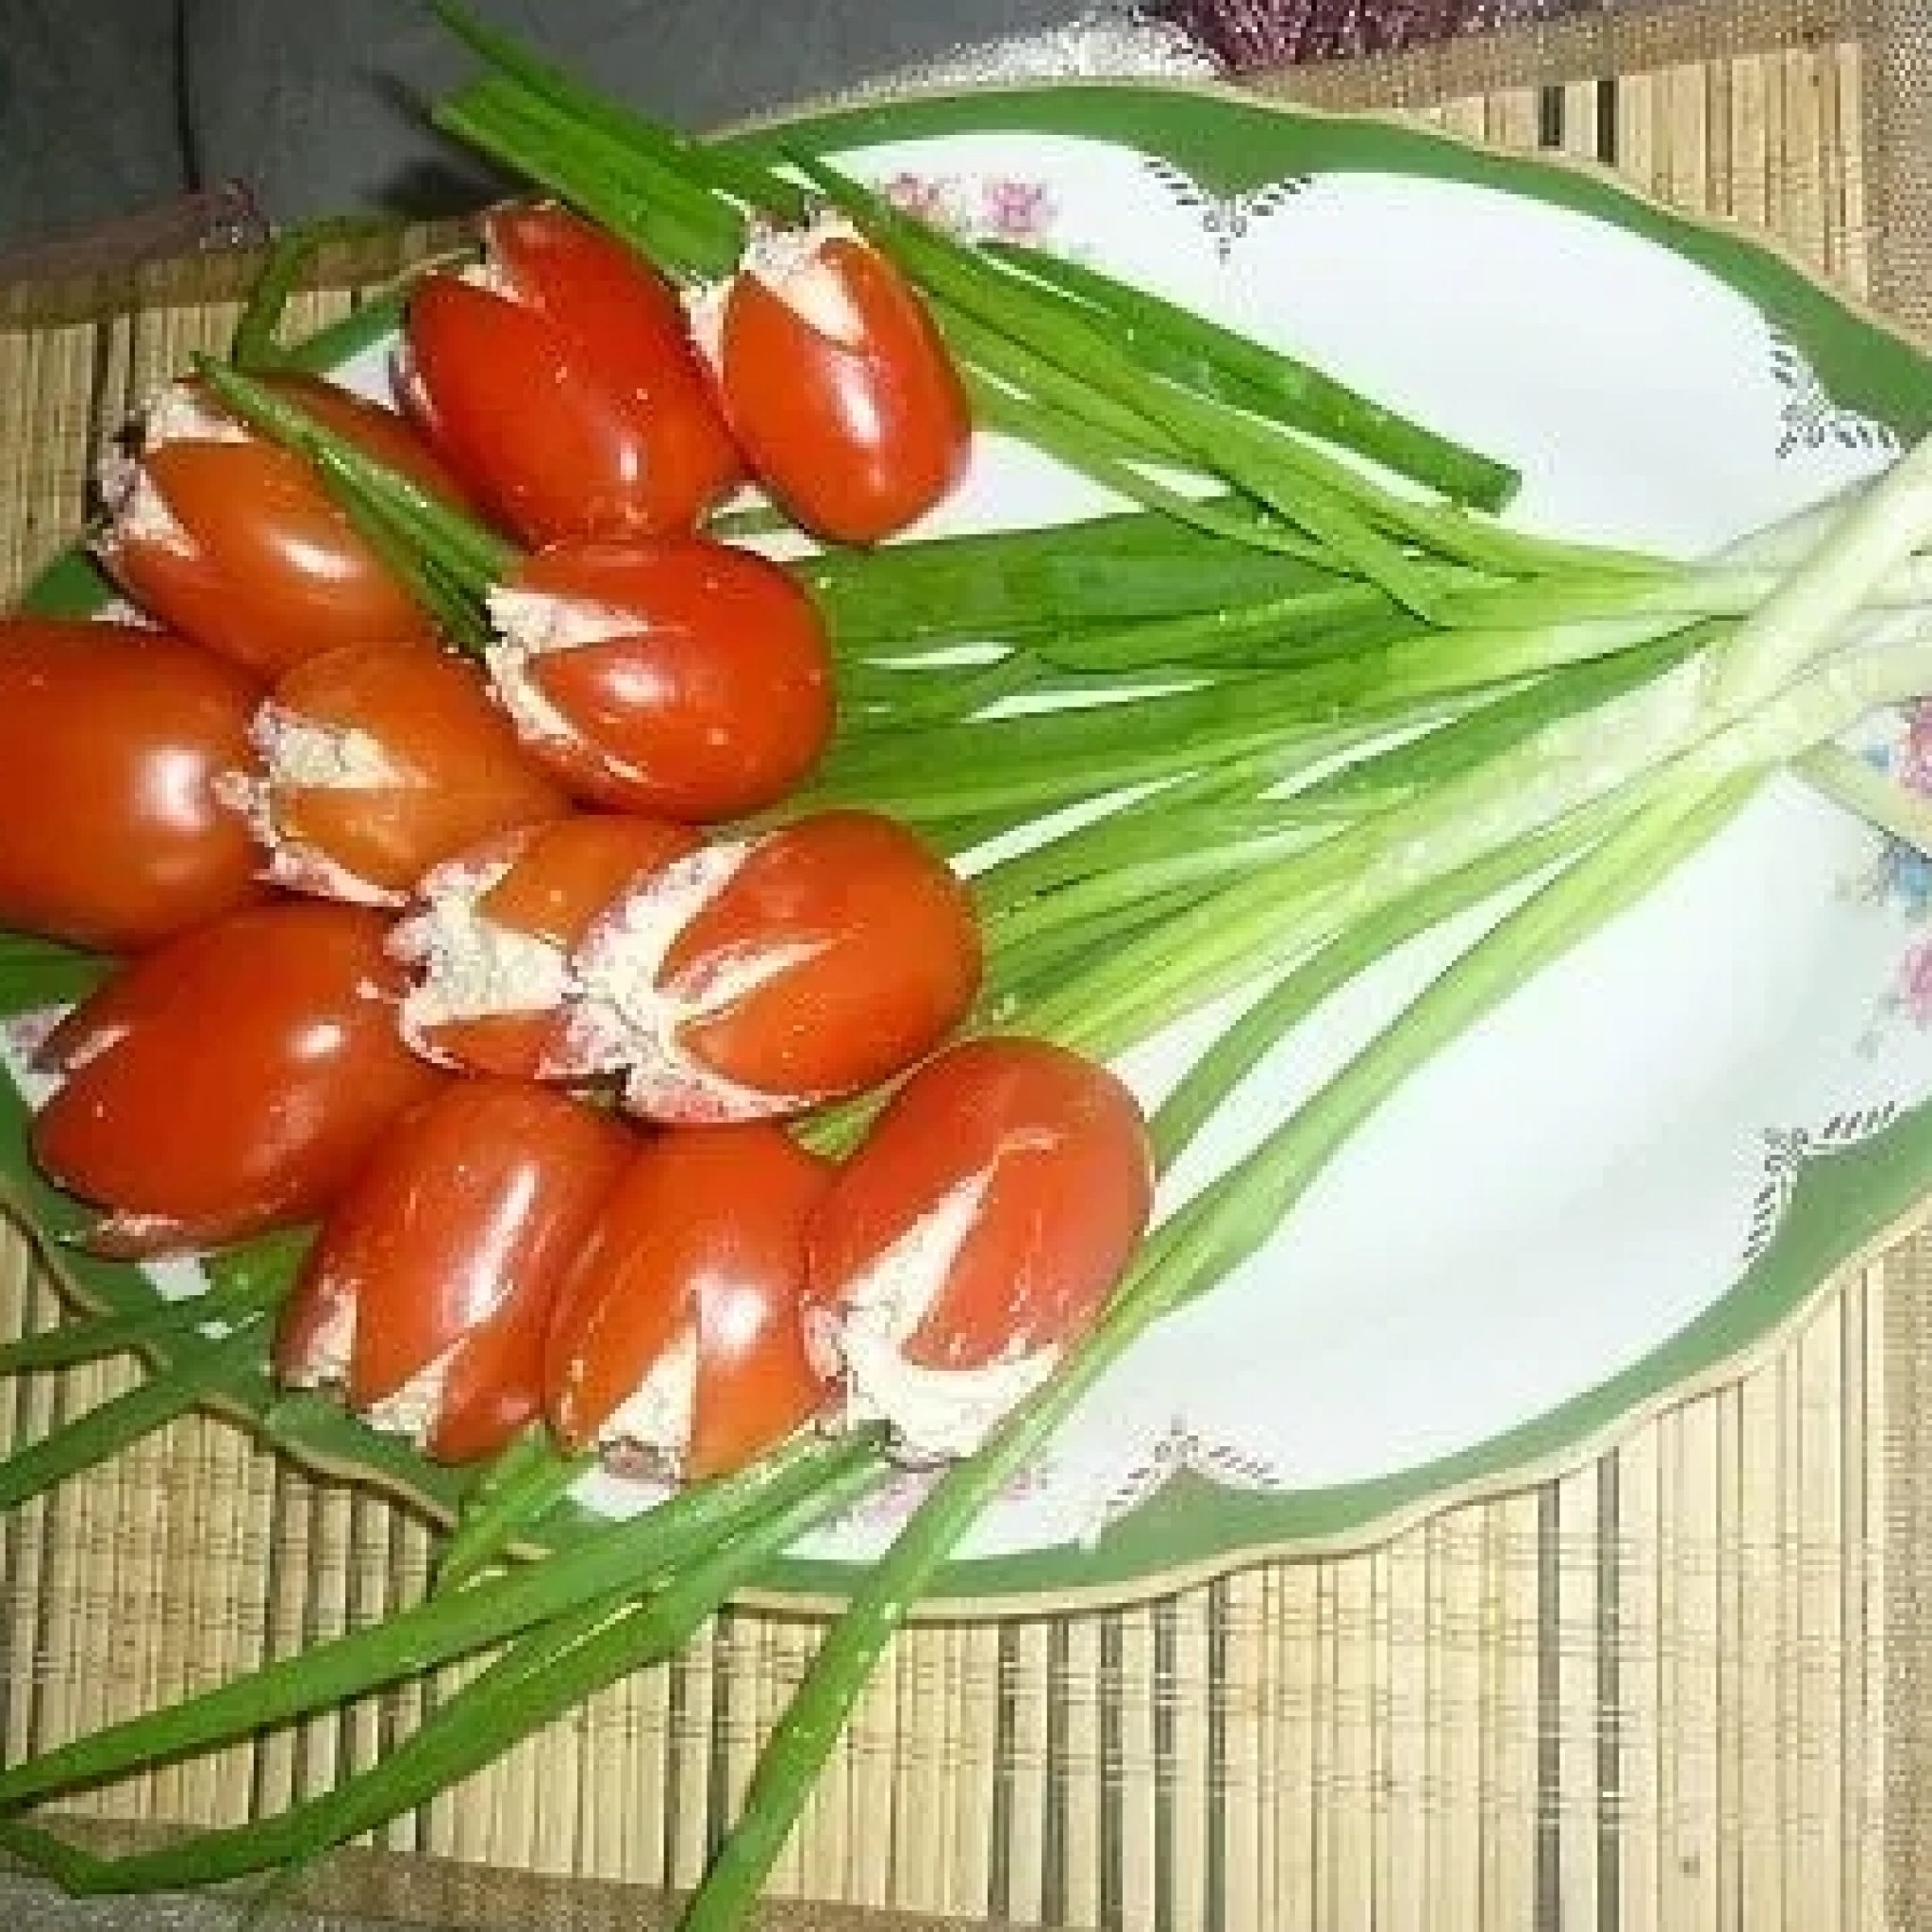 Салат букет тюльпанов